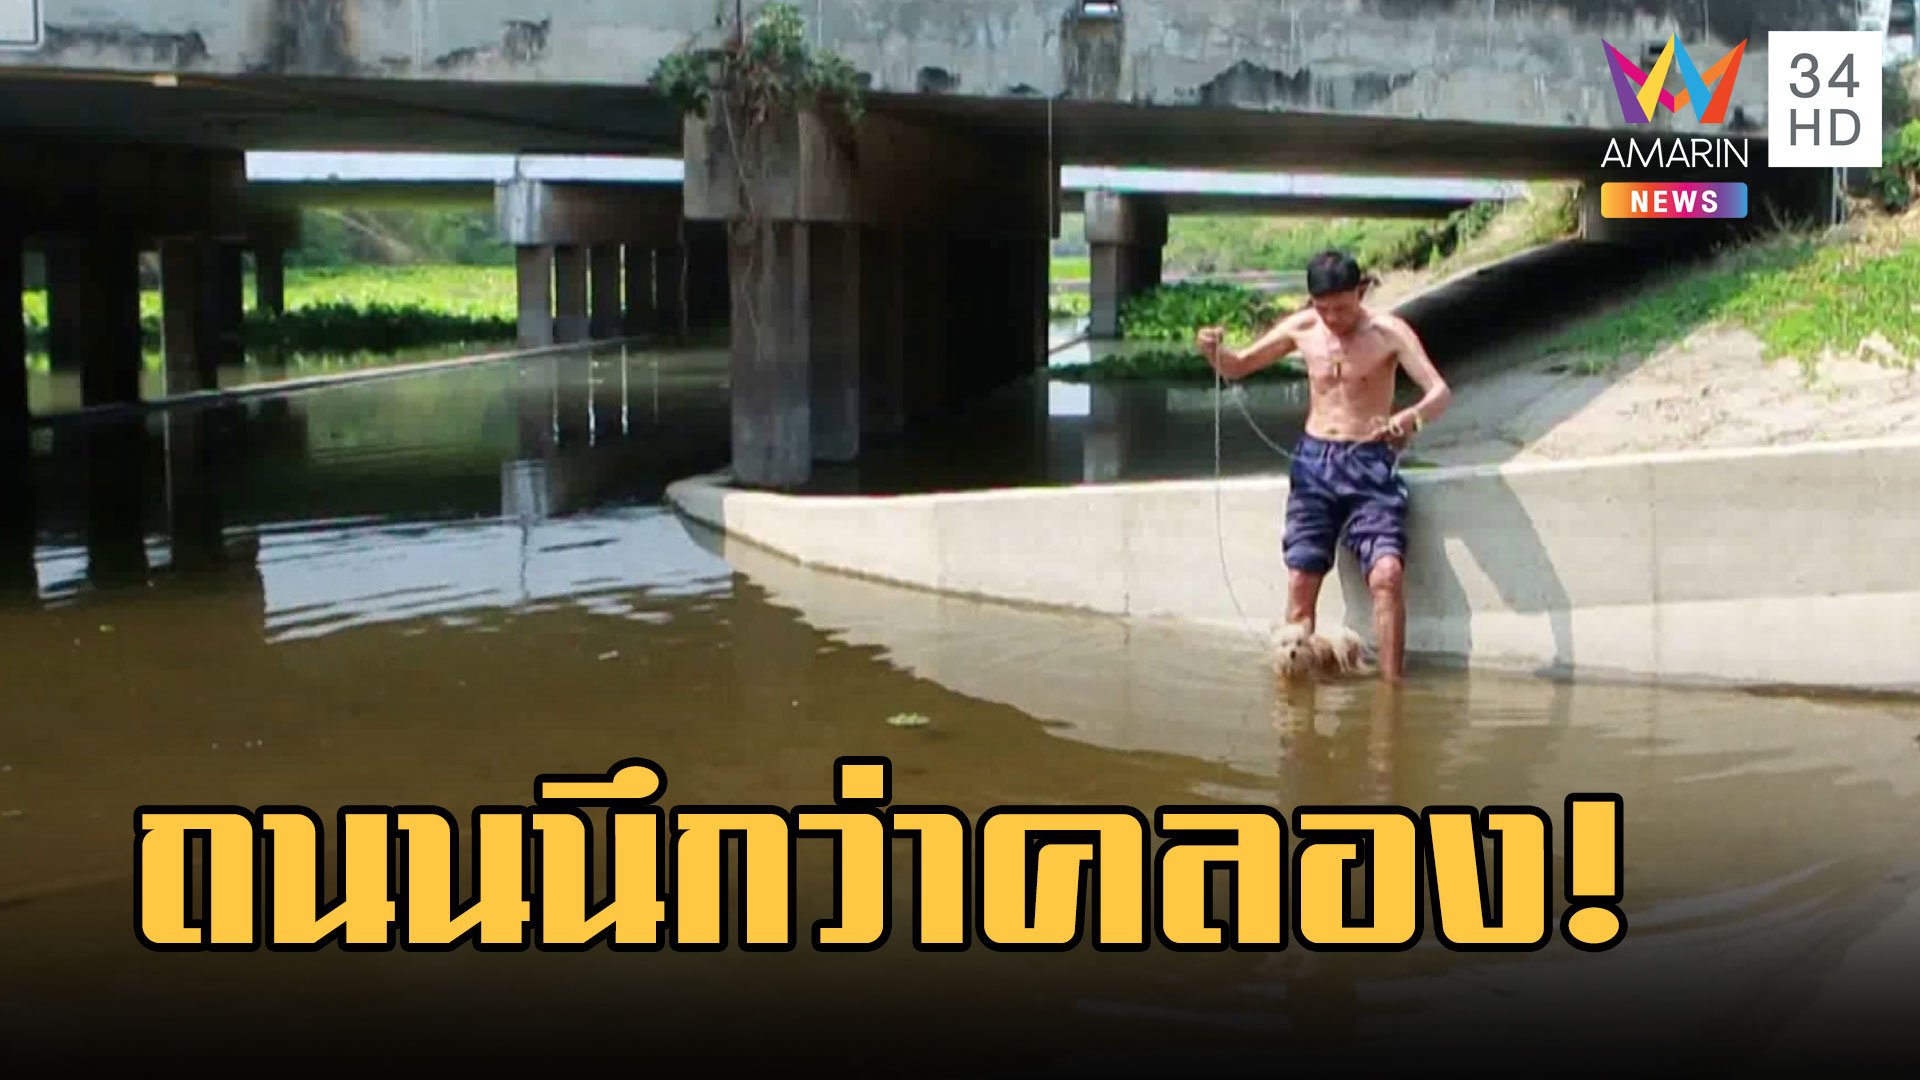 จุดกลับรถใต้น้ำ 6 เดือนใช้งานไม่ได้ น้ำเต็มเหมือนคลอง | ข่าวอรุณอมรินทร์ | 9 มี.ค. 66 | AMARIN TVHD34